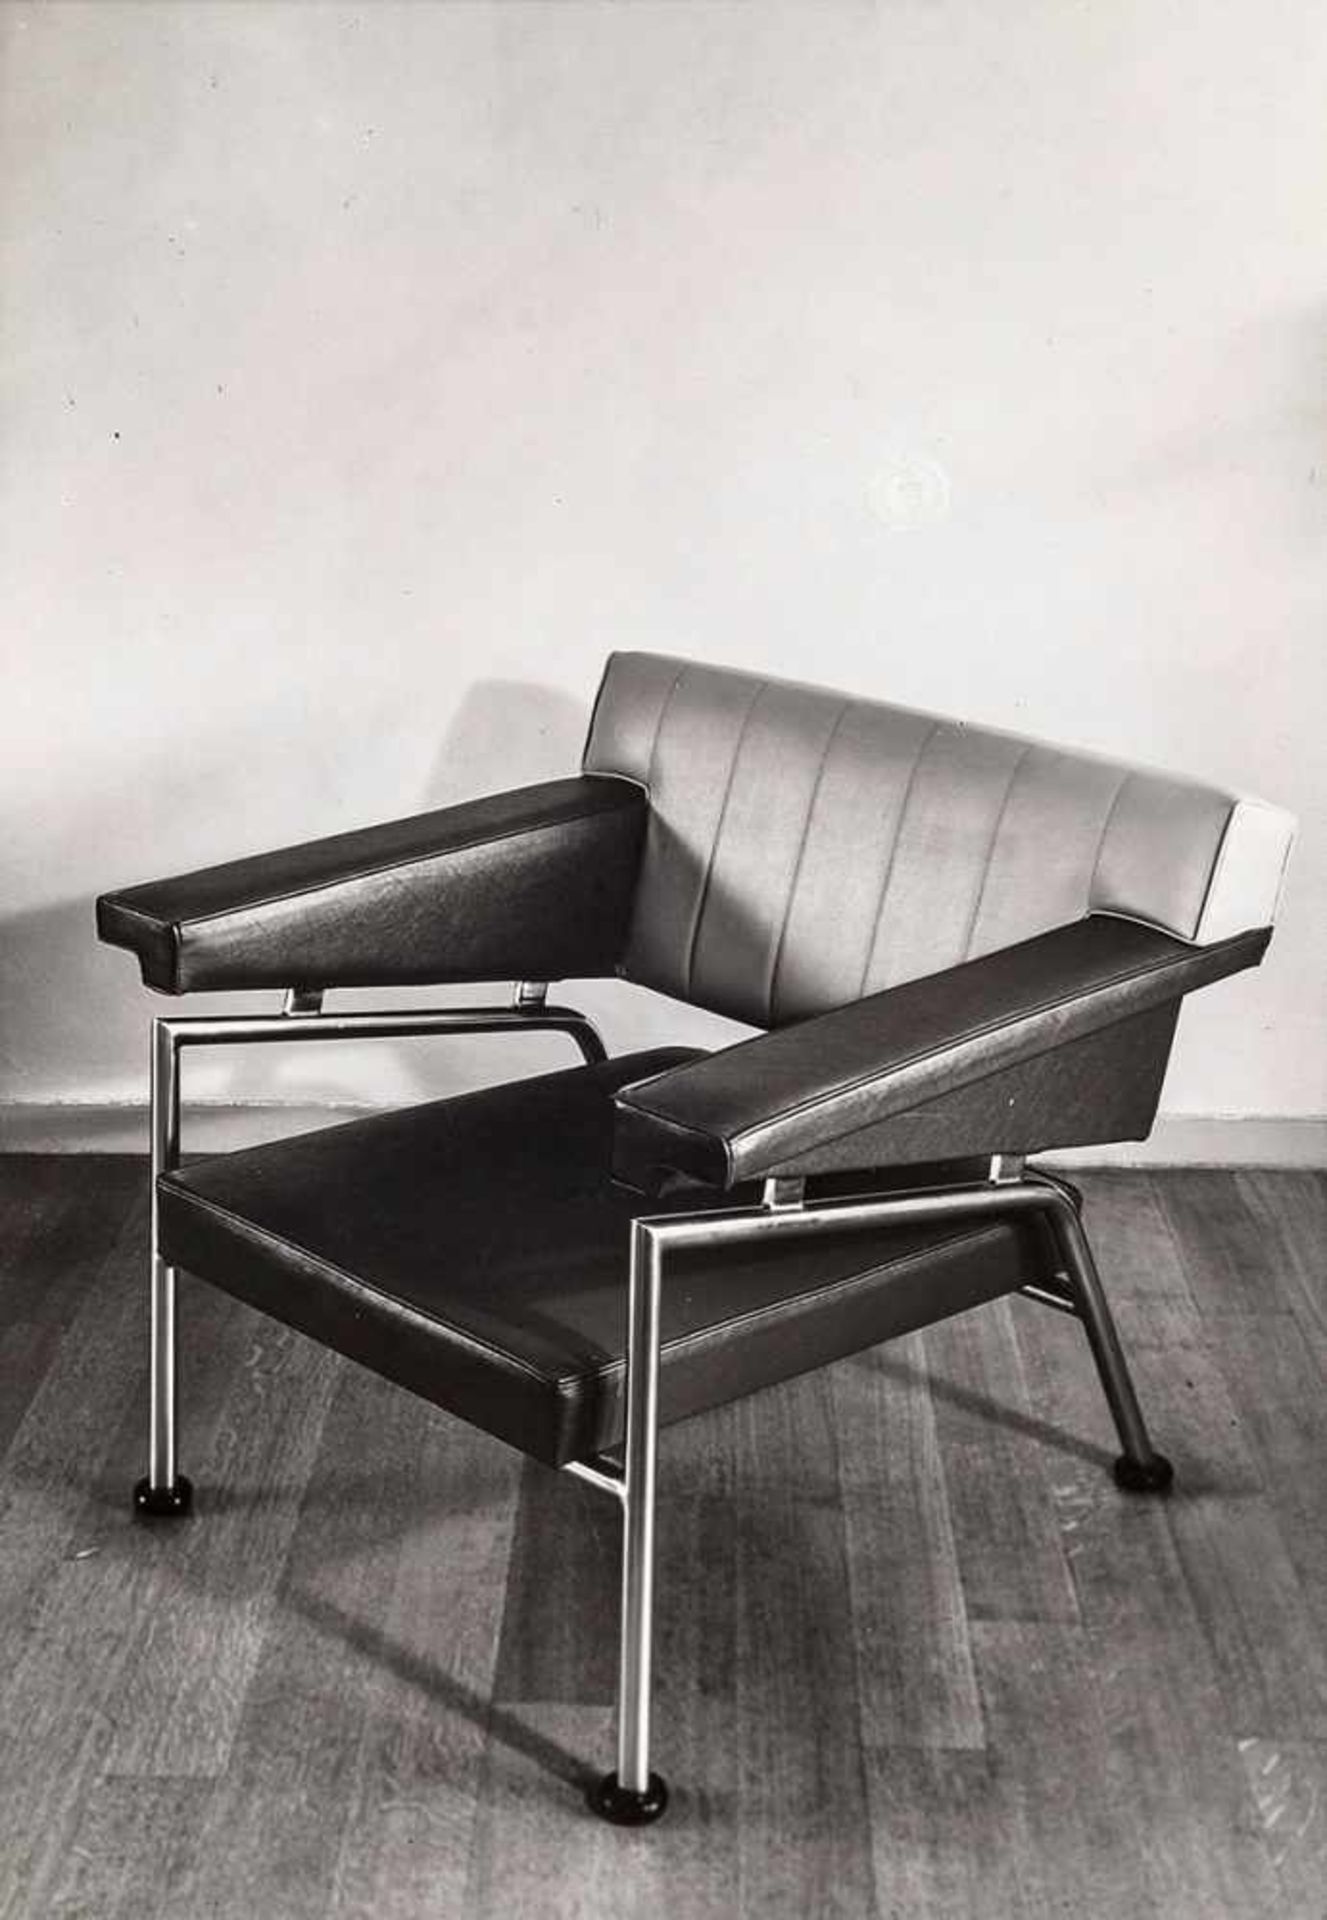 Möbel, Raumkunst. – Jacobus J. P. Oud (1890-1963). 4 Fotografien zu Möbeln: Stühle und ein Tisch